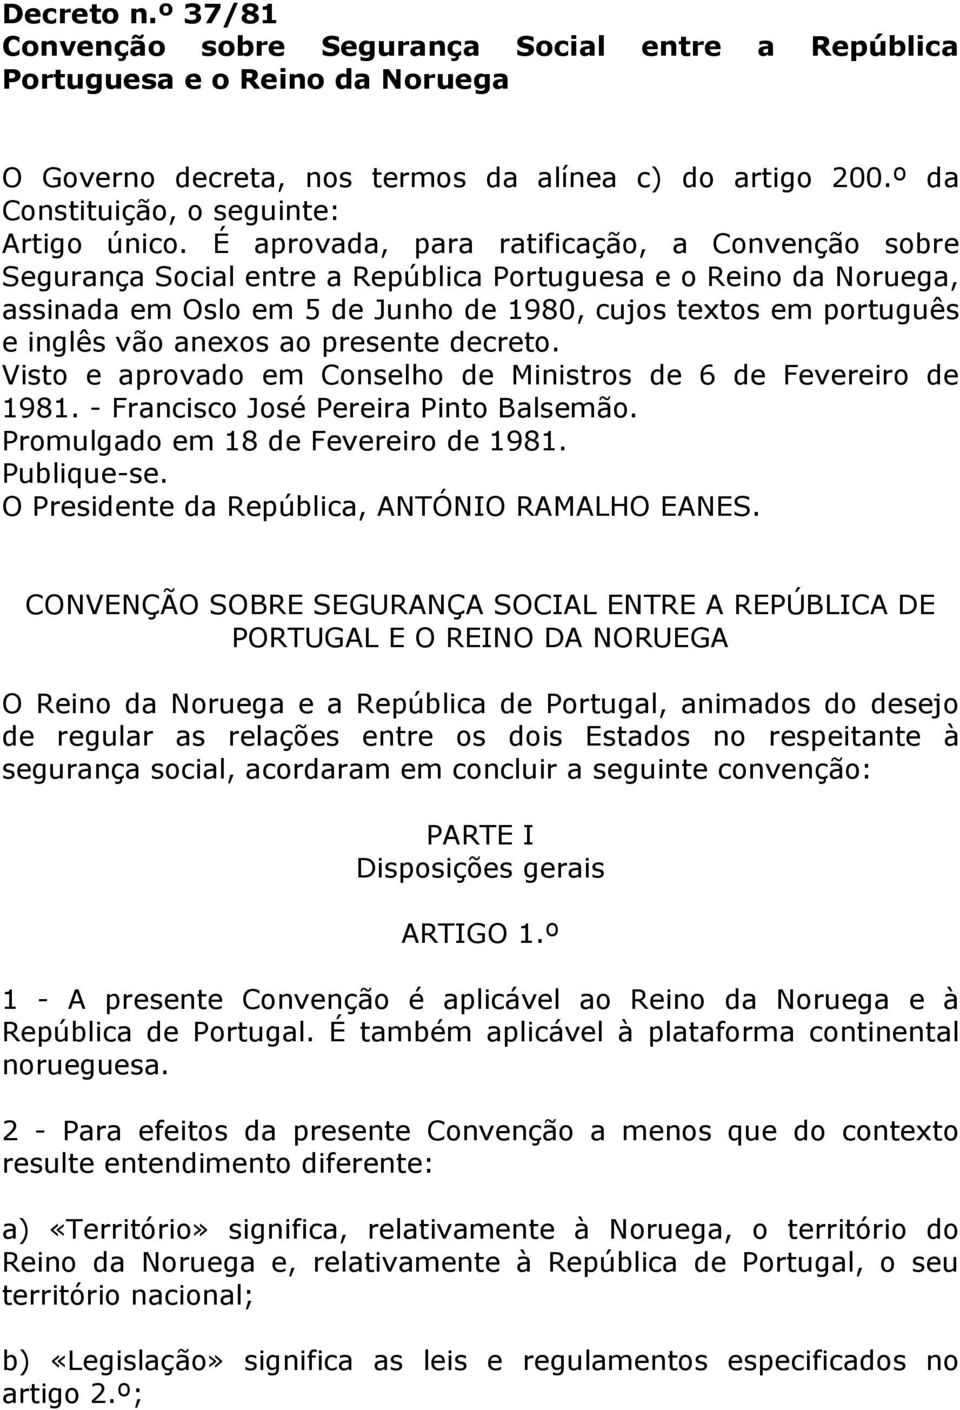 É aprovada, para ratificação, a Convenção sobre Segurança Social entre a República Portuguesa e o Reino da Noruega, assinada em Oslo em 5 de Junho de 1980, cujos textos em português e inglês vão